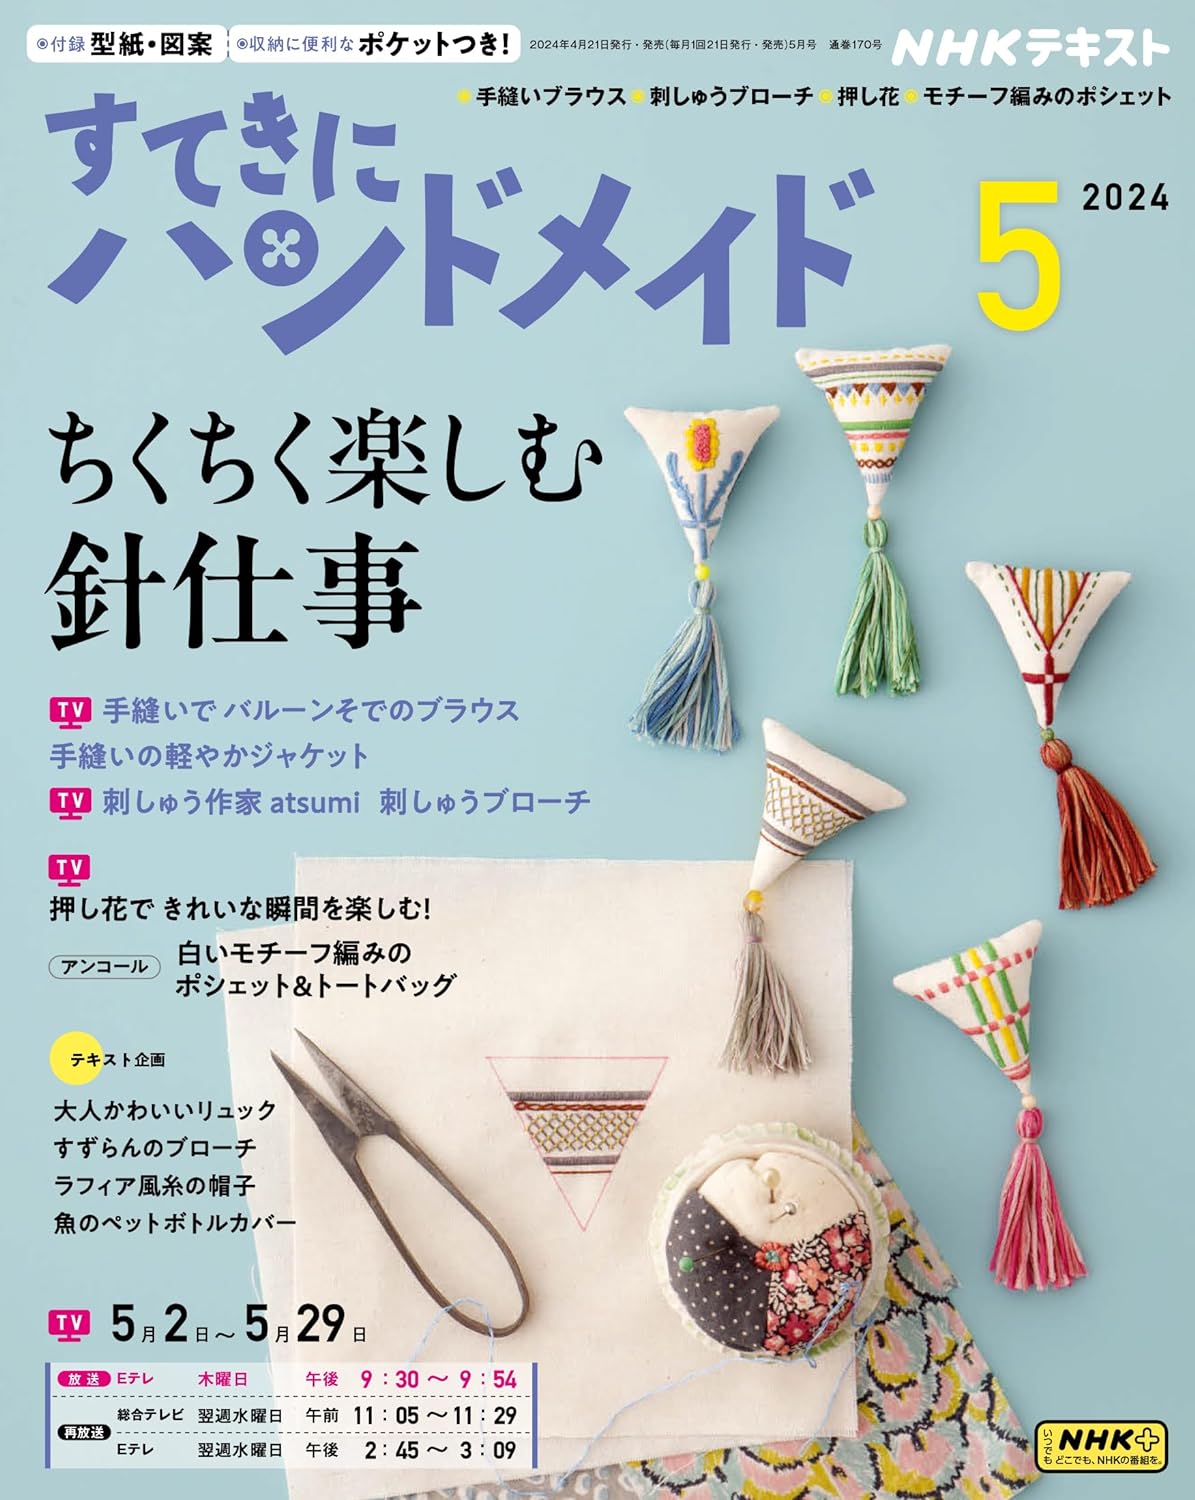 NHK67054 Sutekini Handmade, May 2024 issue(book)